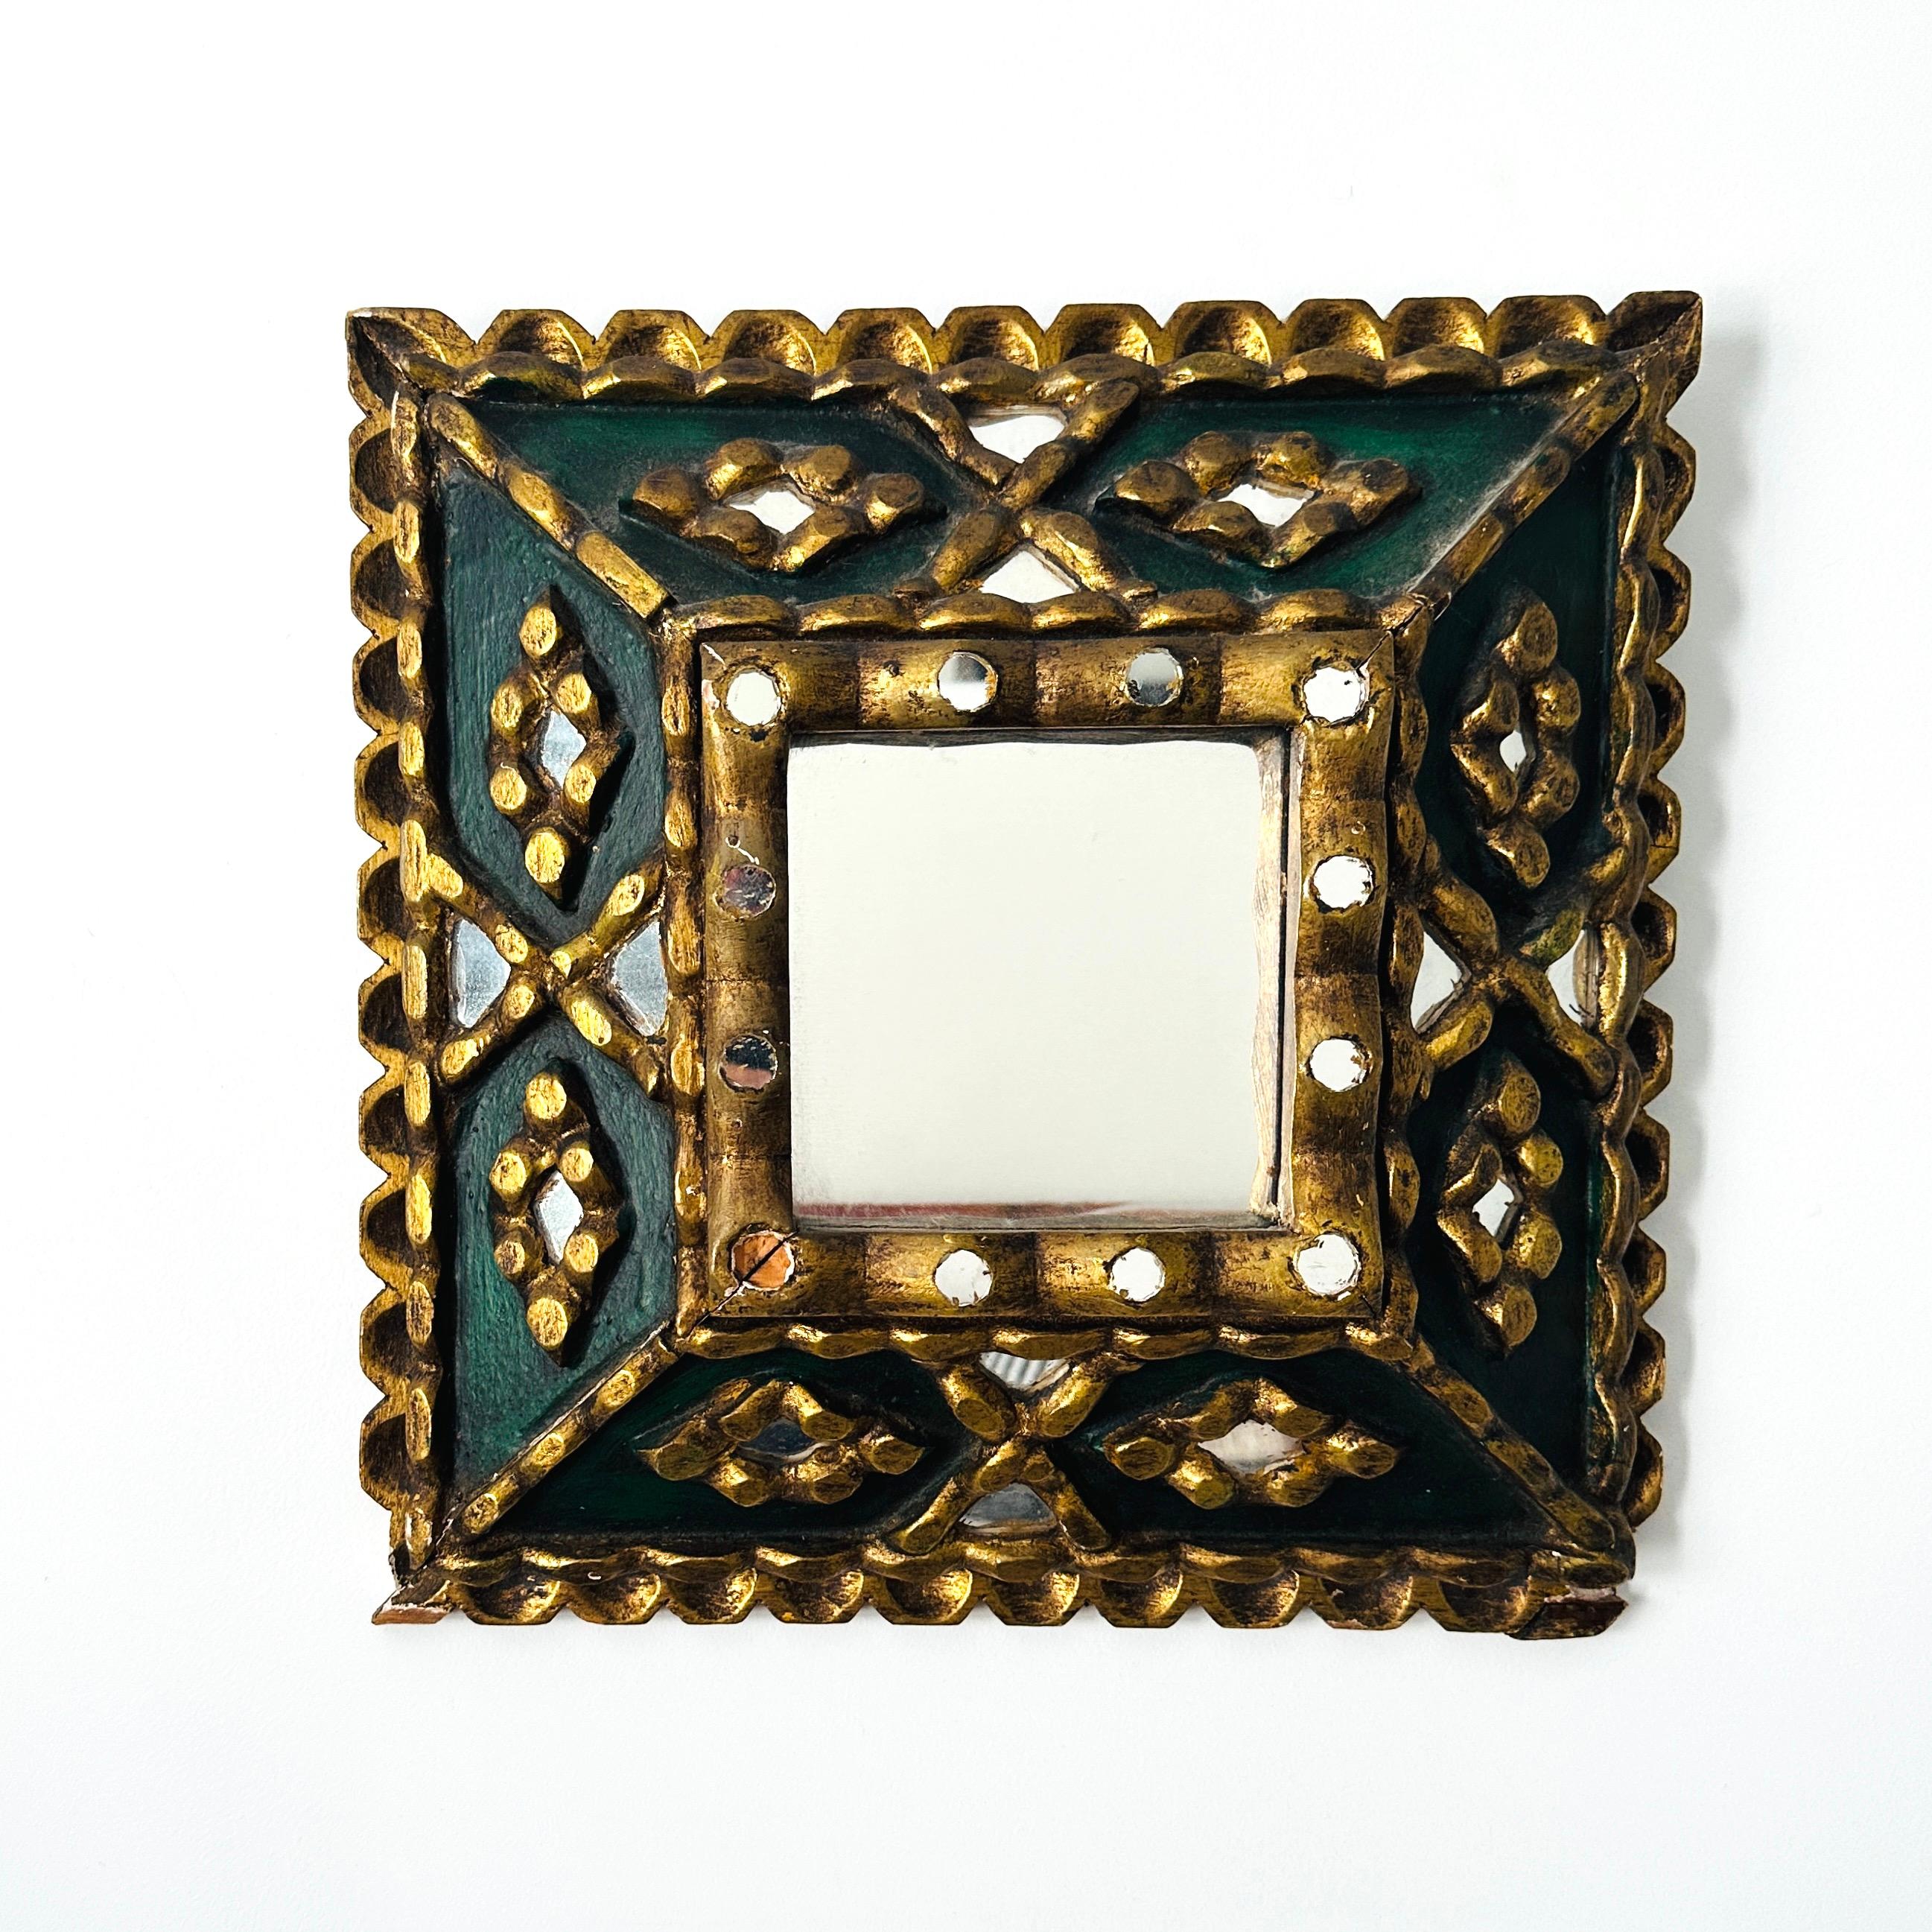 Antiker Spiegel aus der spanischen Kolonialzeit mit einem handgefertigten Schattenboxrahmen mit kunstvollen Schnitzereien  in vergoldetem Holz.  Dieser einzigartige Rahmen verfügt außerdem über eine Reihe von Mosaik-Spiegeleinsätzen und ein